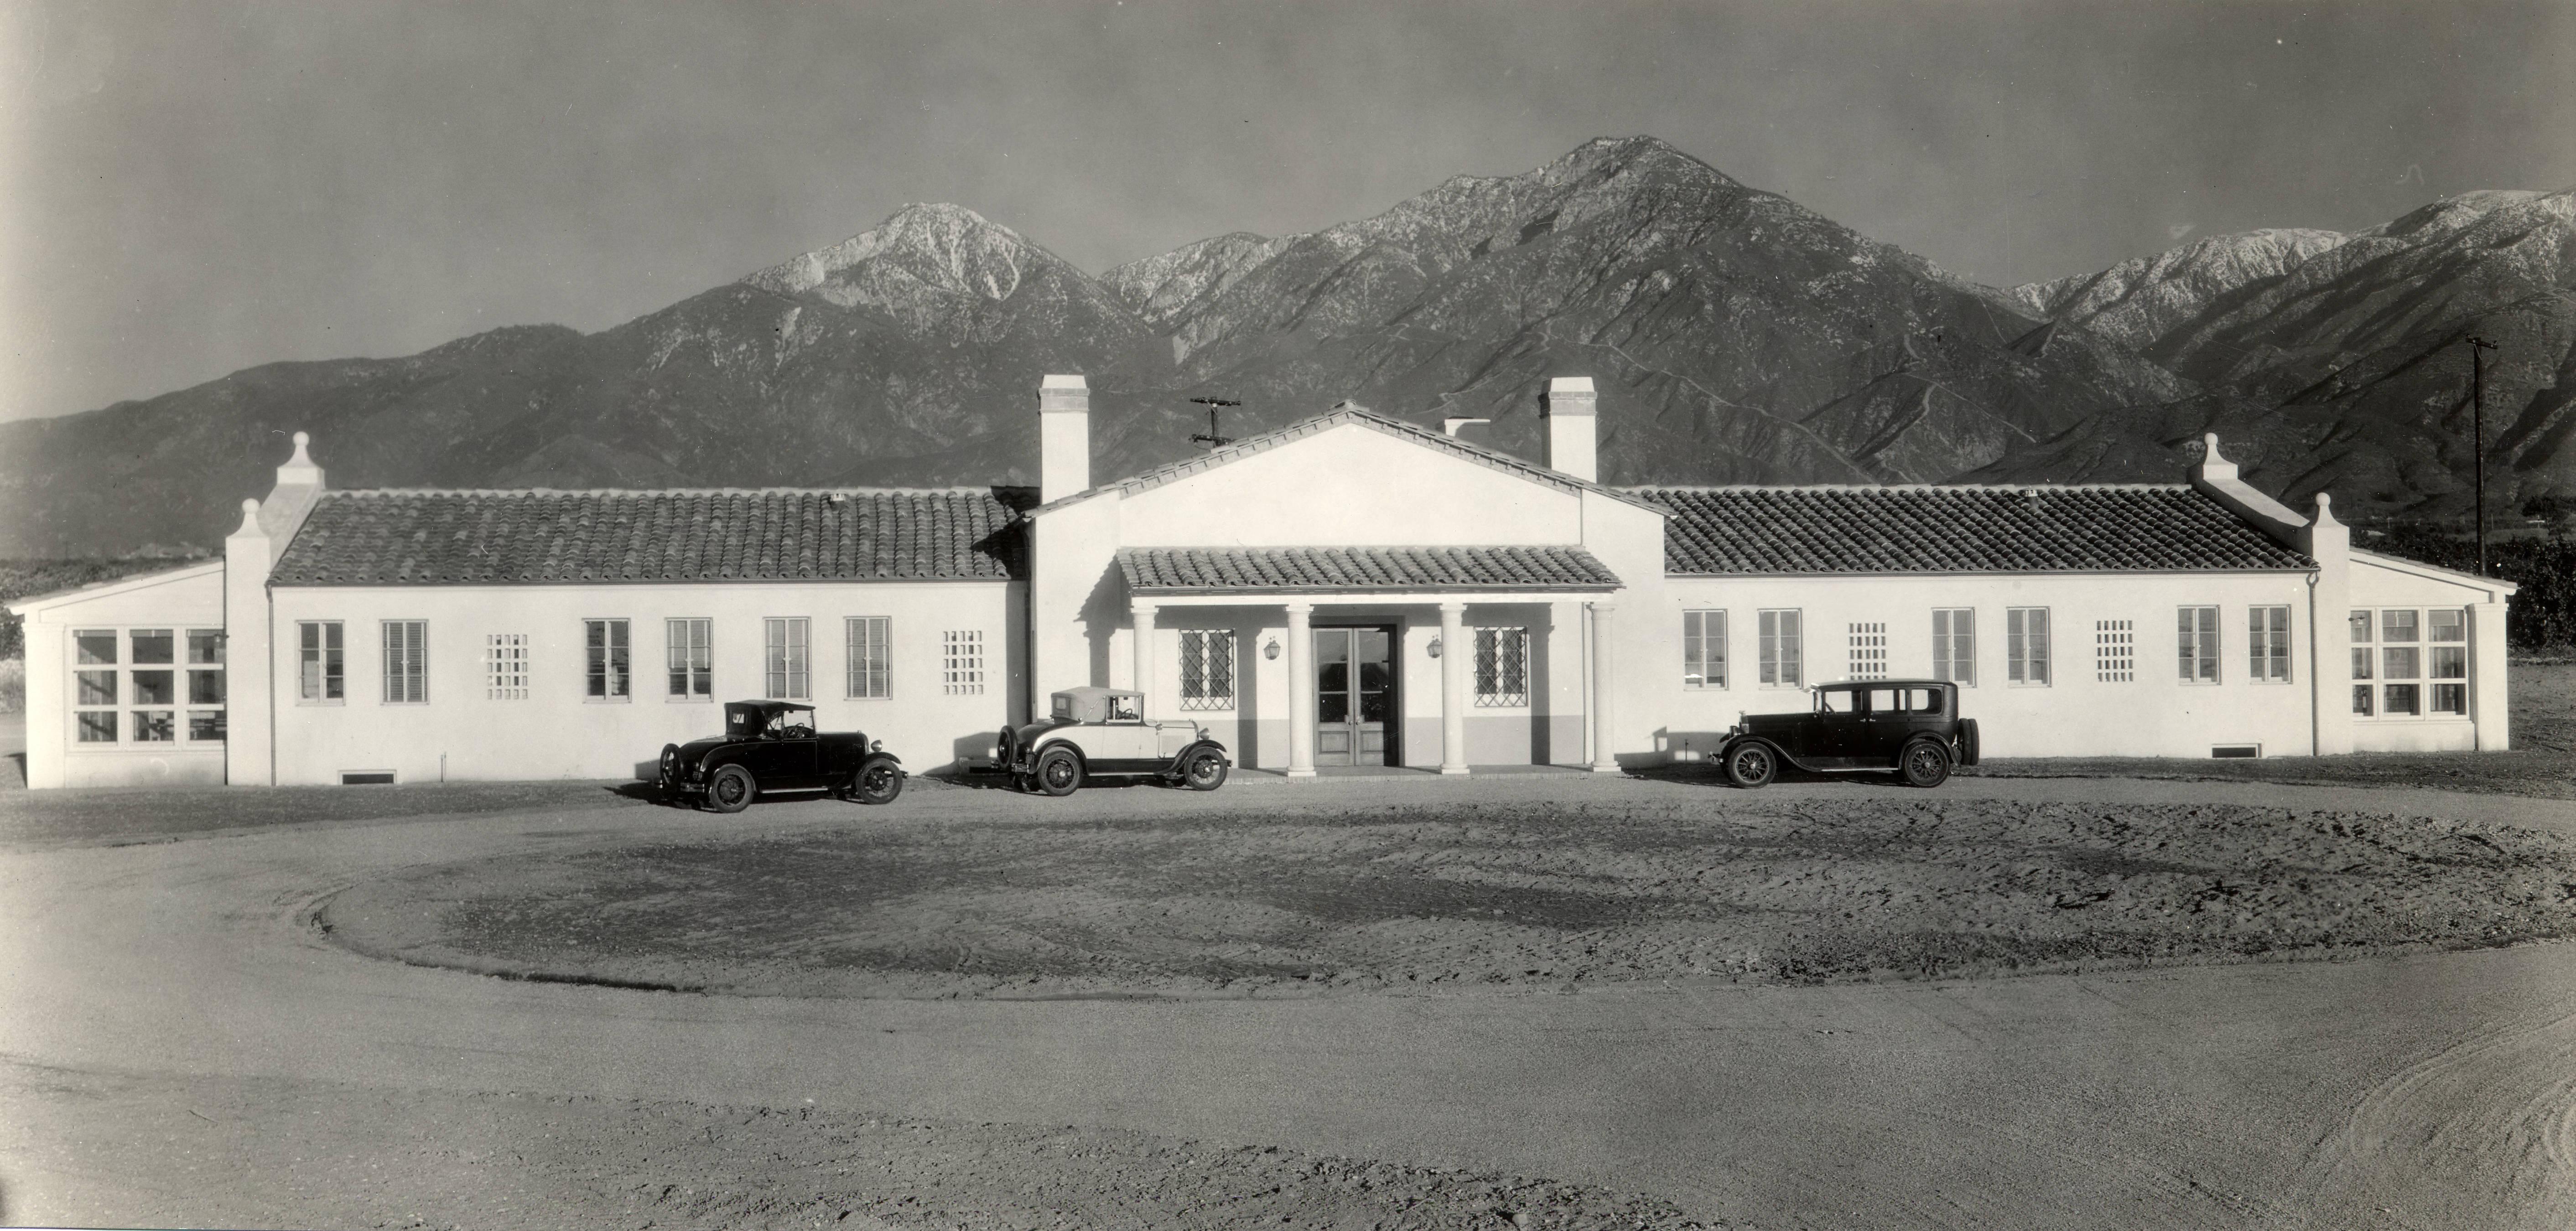 图片:克莱蒙特学院纪念医院(c. 1931)